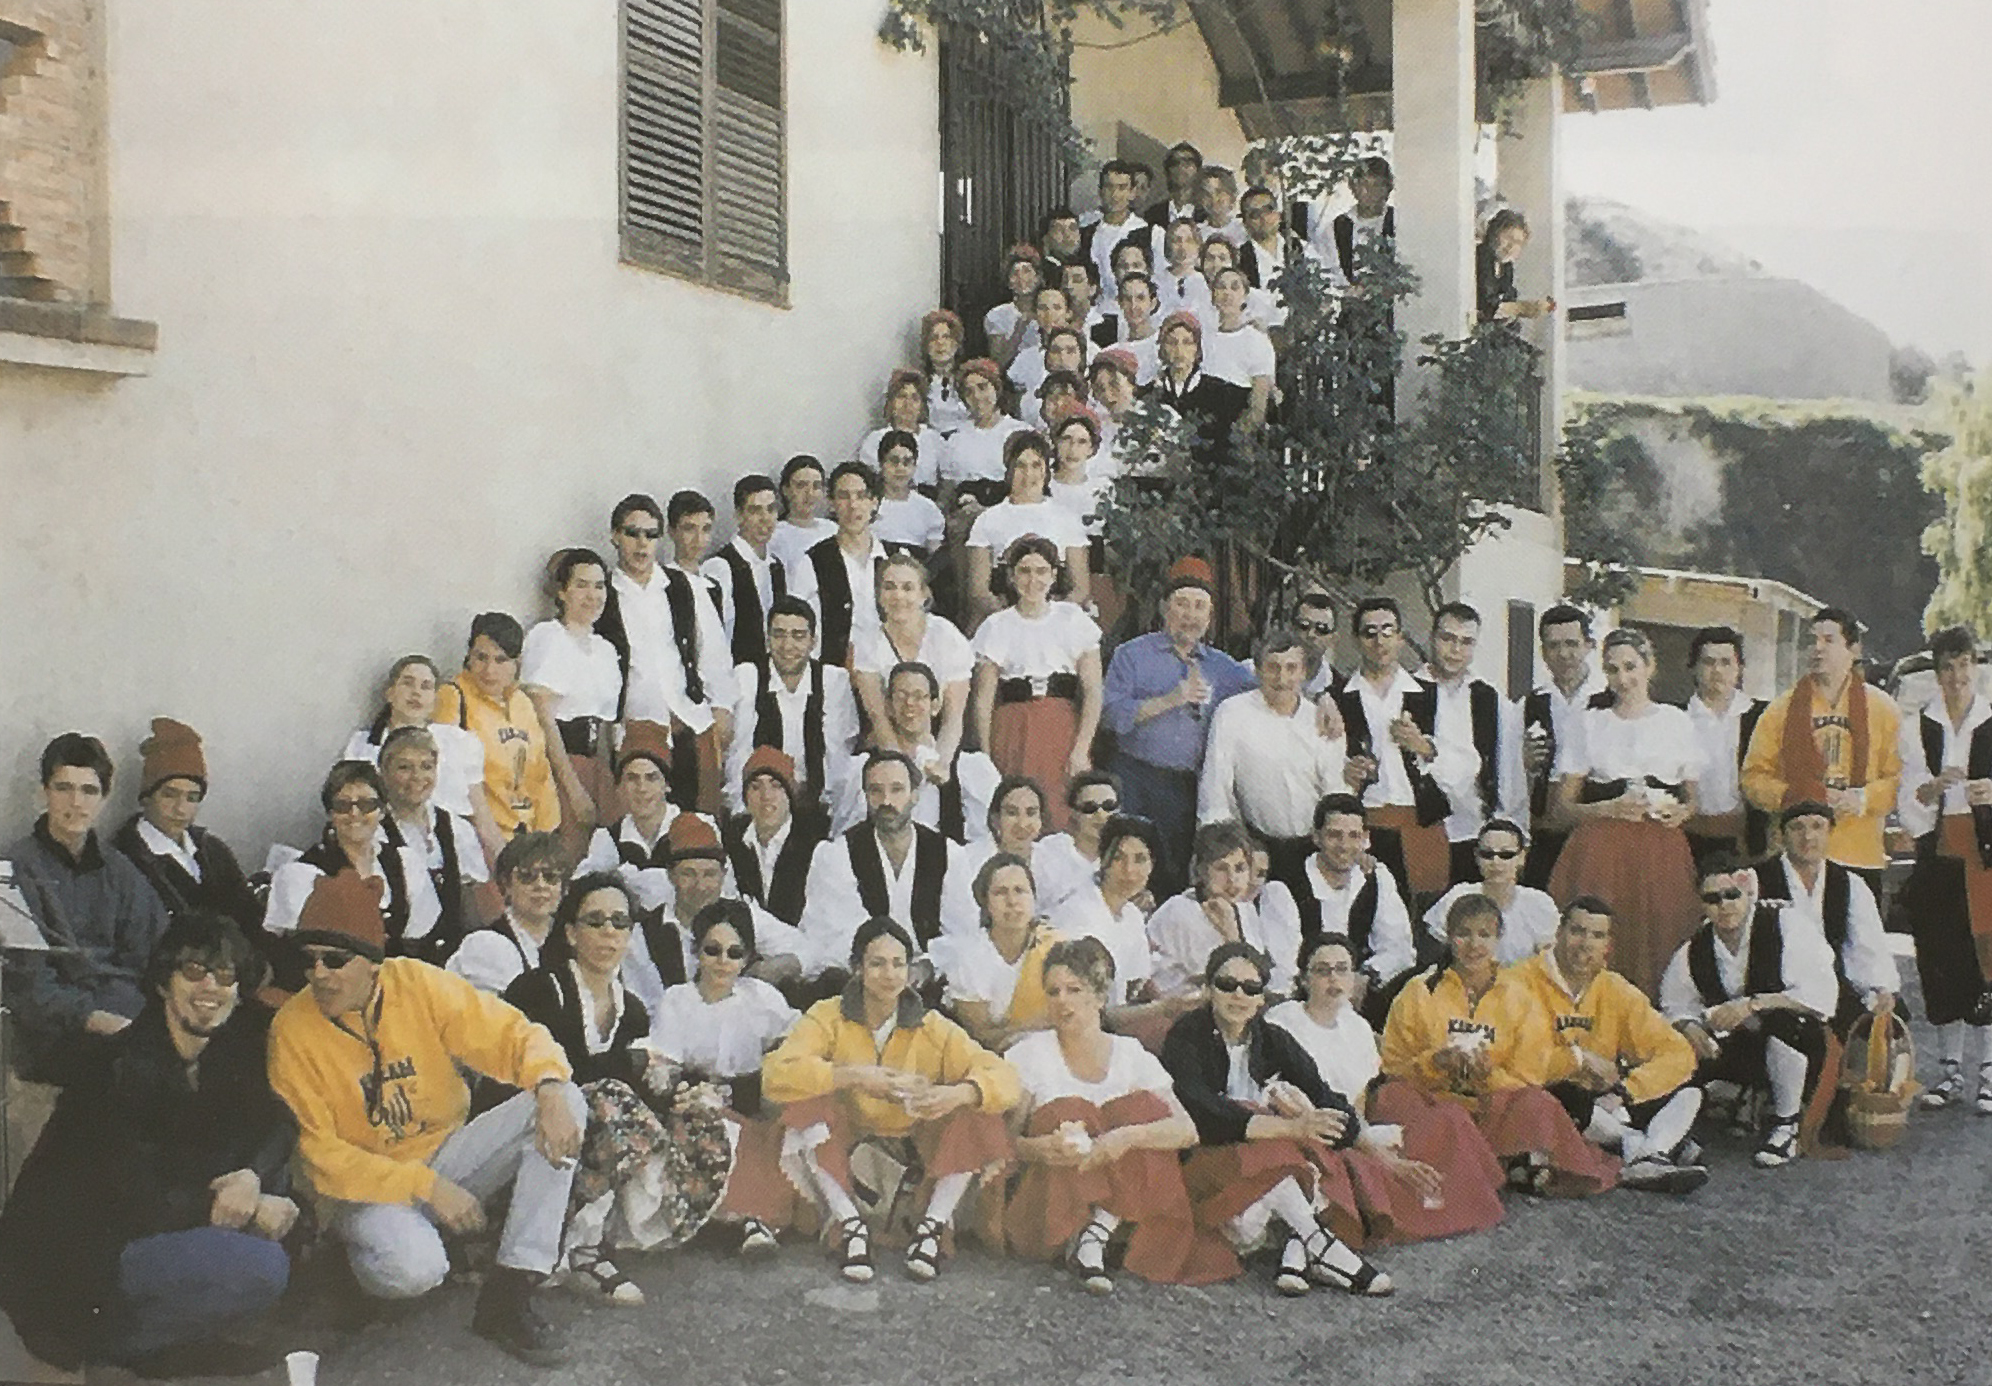 DÃ¨cada de 2000 - Colla caramellaire del Foment Cultural (font: llibre 'SÃºria ahir i avui' de Josep Massana i Portella).